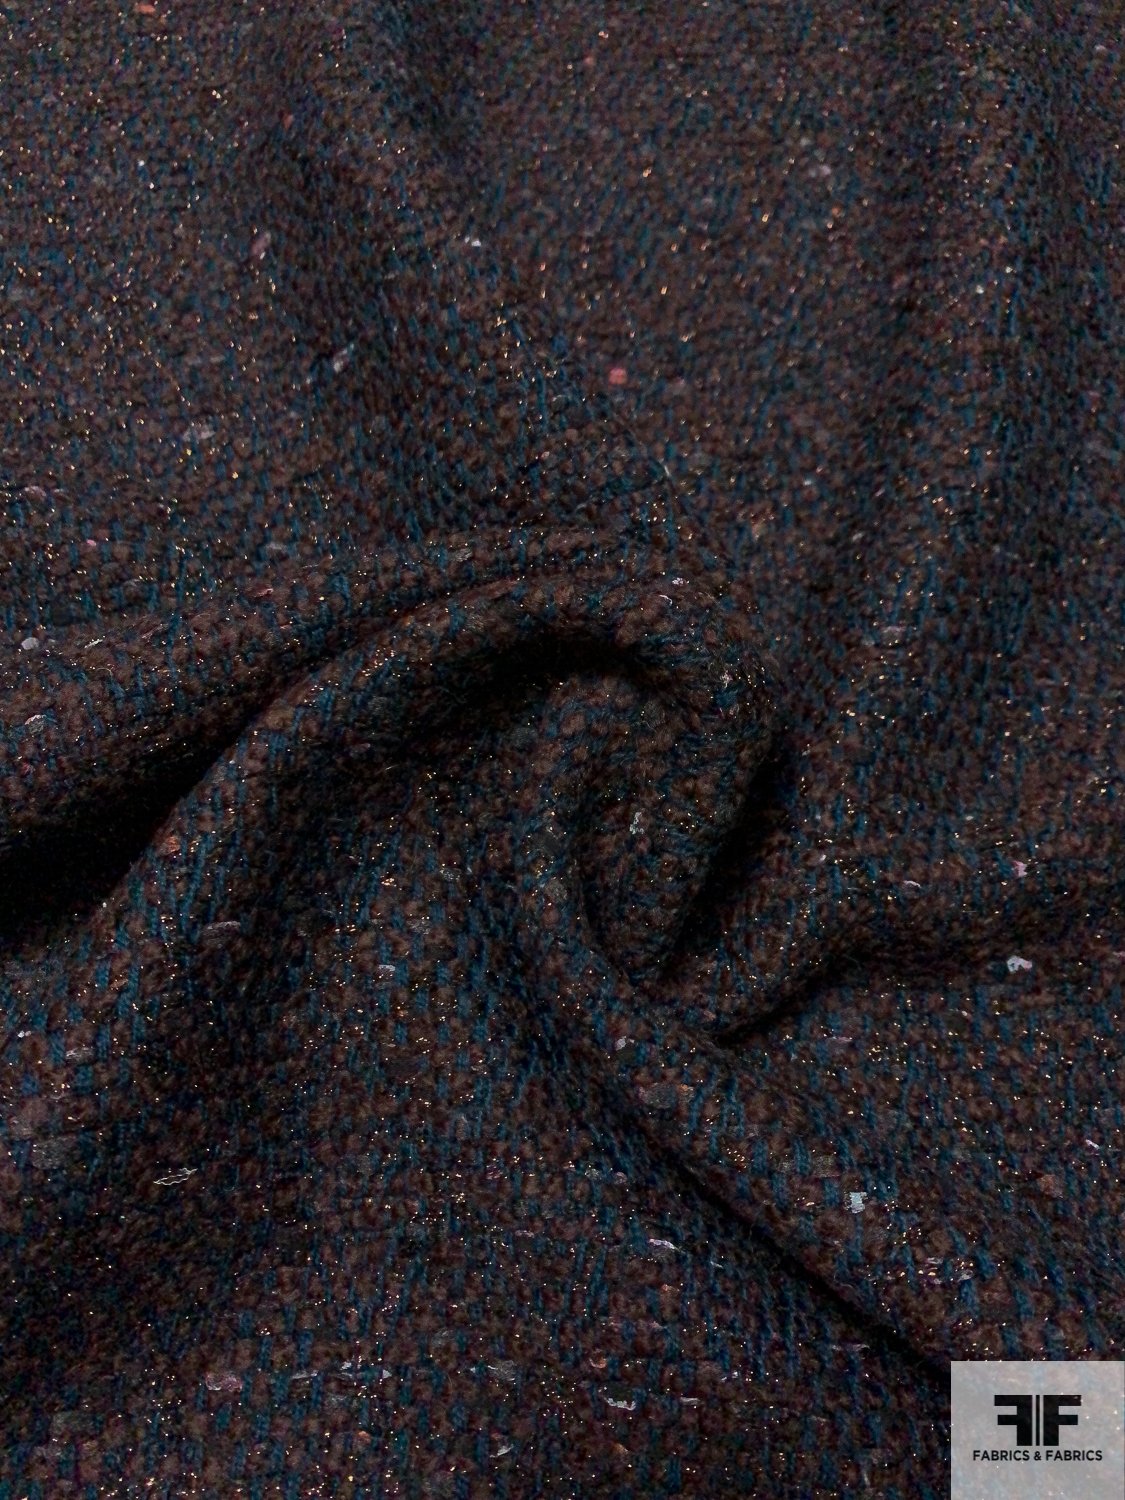 Made in England Wool and Lurex Tweed - Deep Teal / Dark Bordeaux